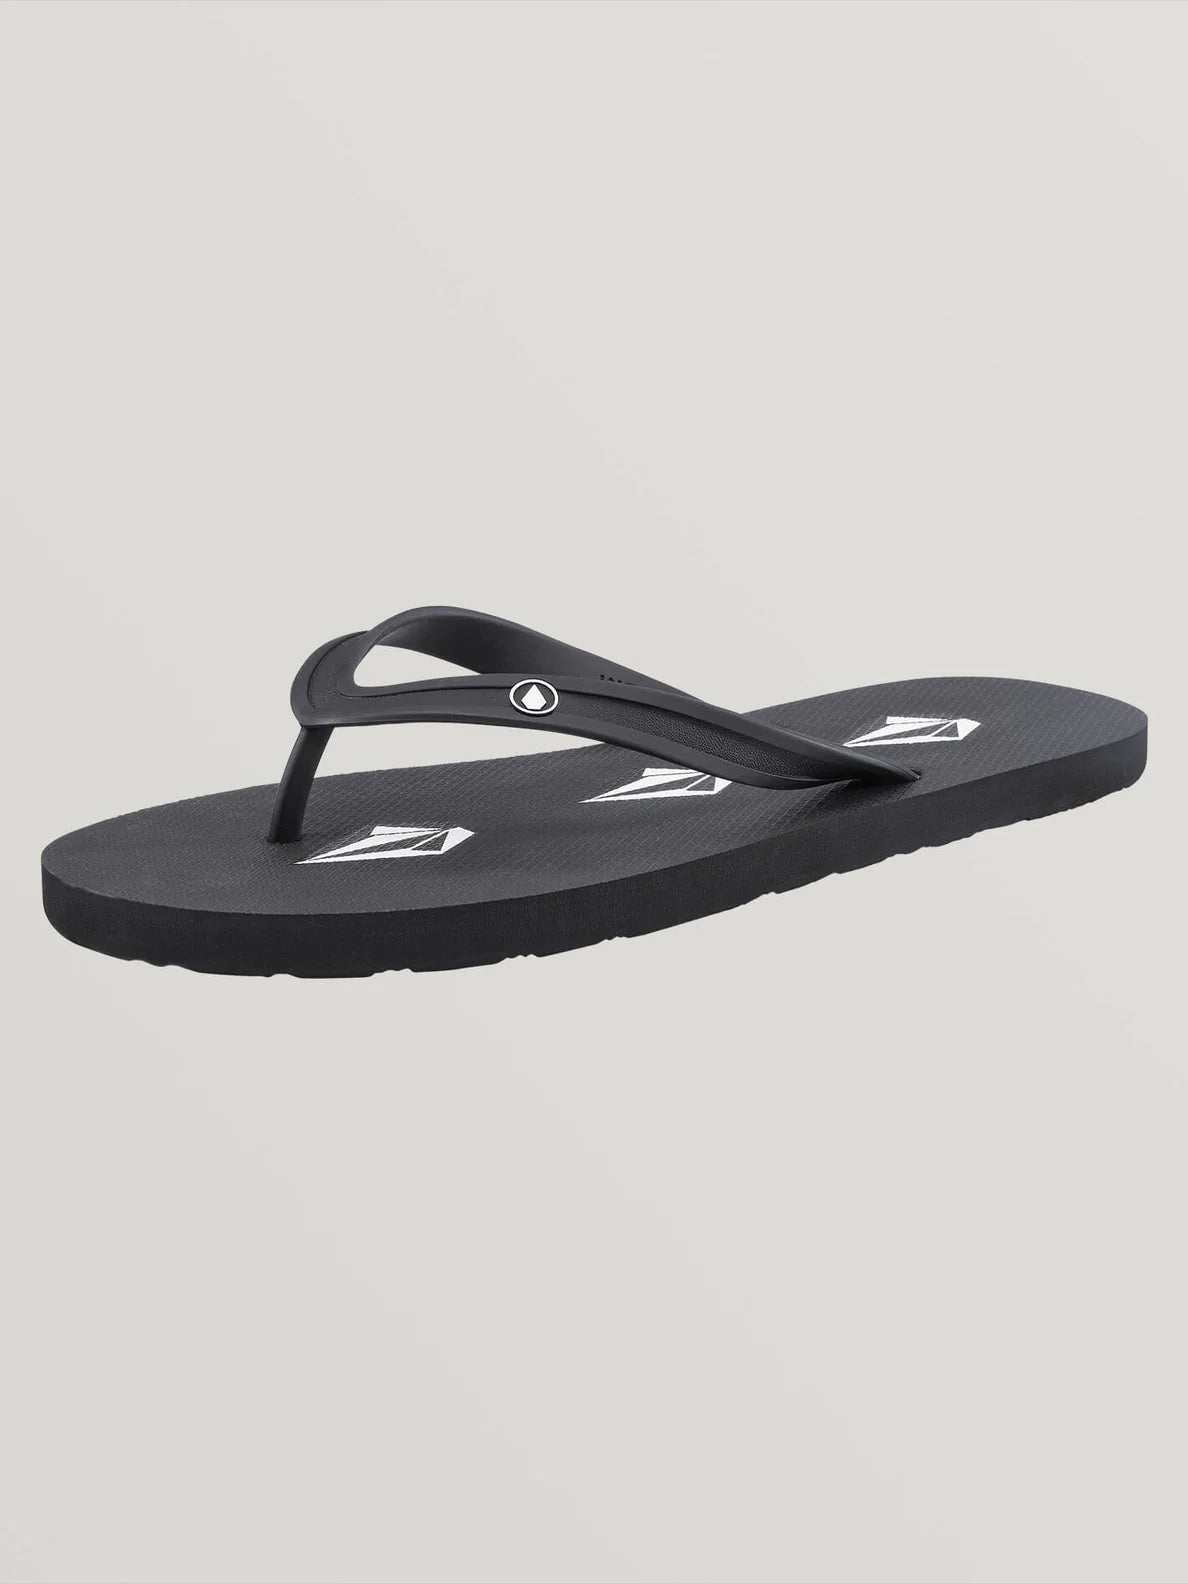 Rocker 2 Steinige schwarze Sandalen | Flip-Flops | Meistverkaufte Produkte | Neue Produkte | Neueste Produkte | Sammlung_Zalando | Schuhwerk | Volcom-Shop | surfdevils.com